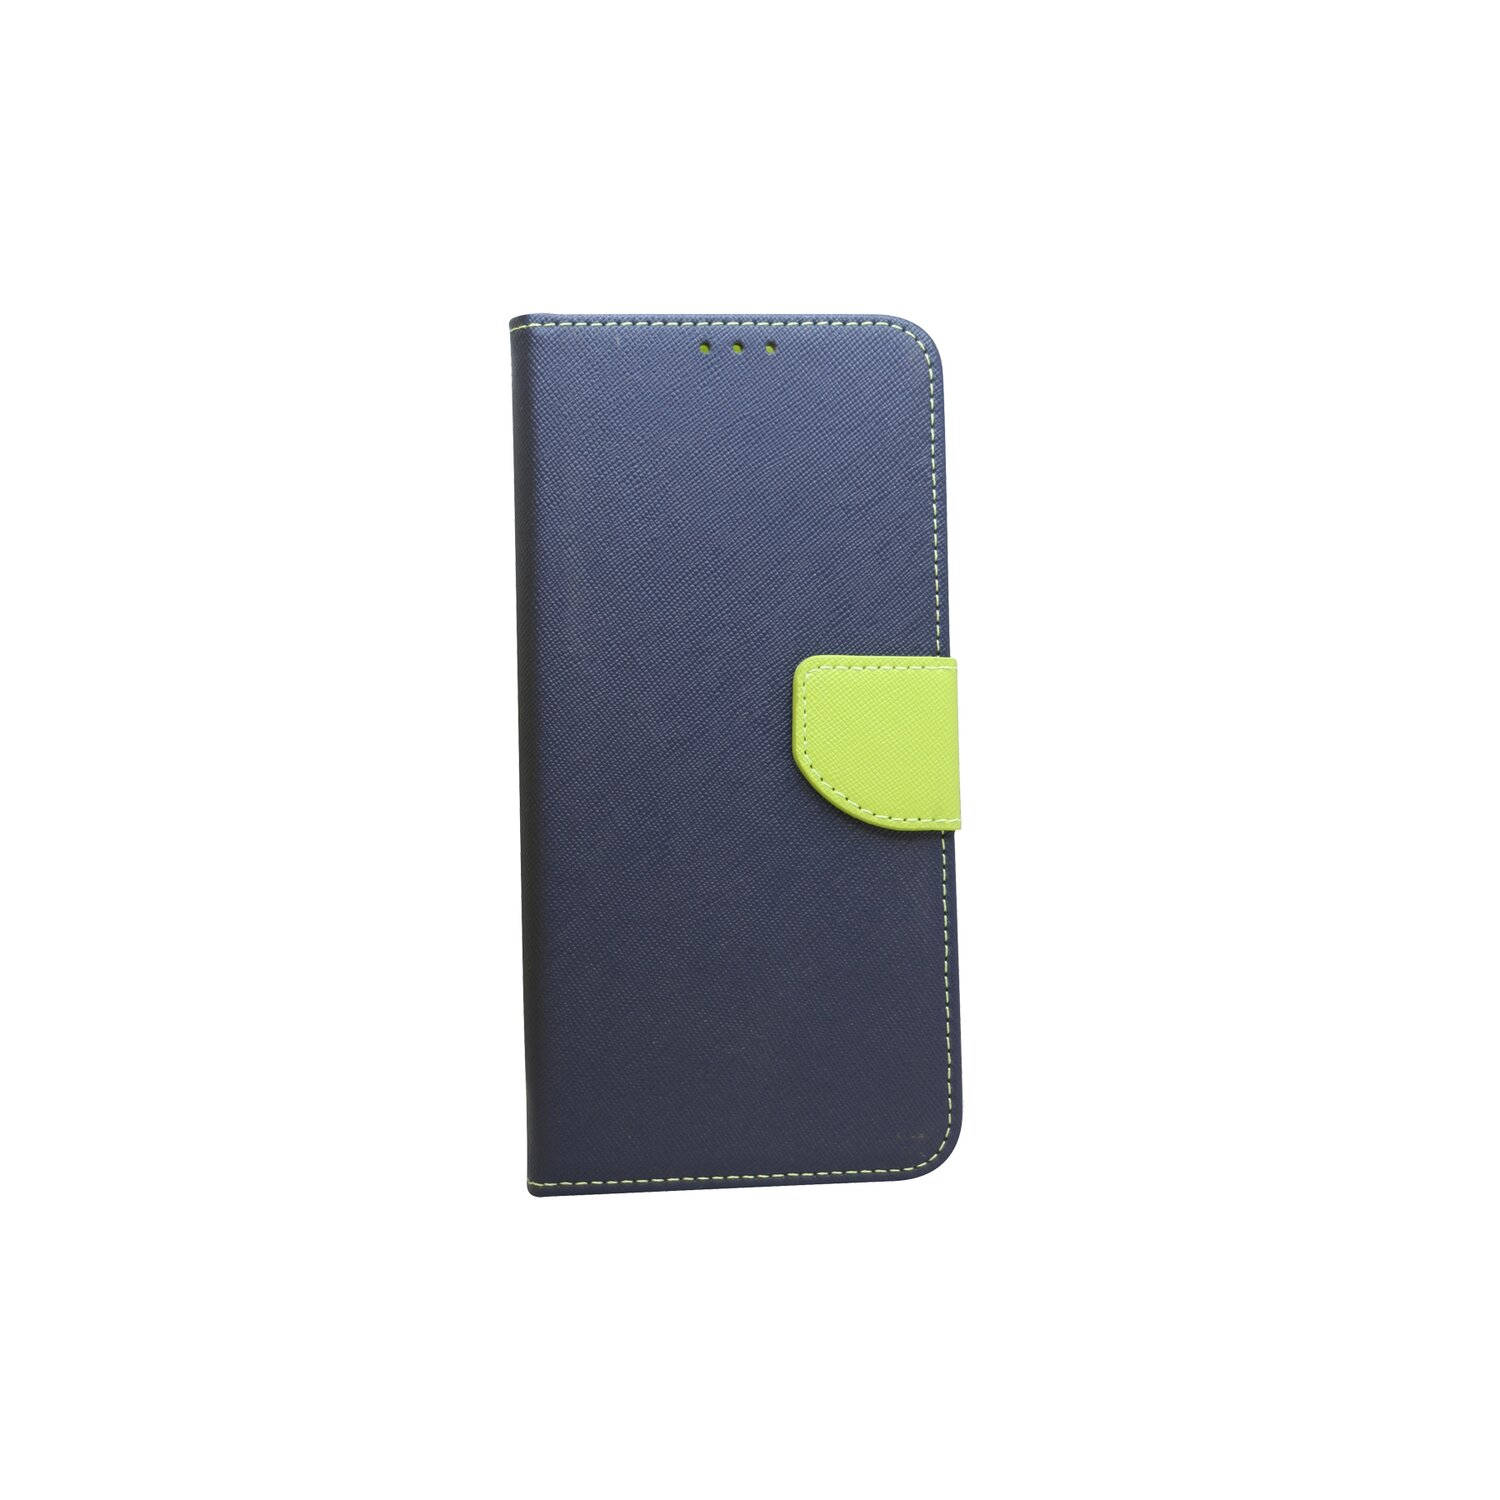 A03s Blau-Grün Bookcover, ), Galaxy (A037G COFI Buch-Tasche, Samsung,